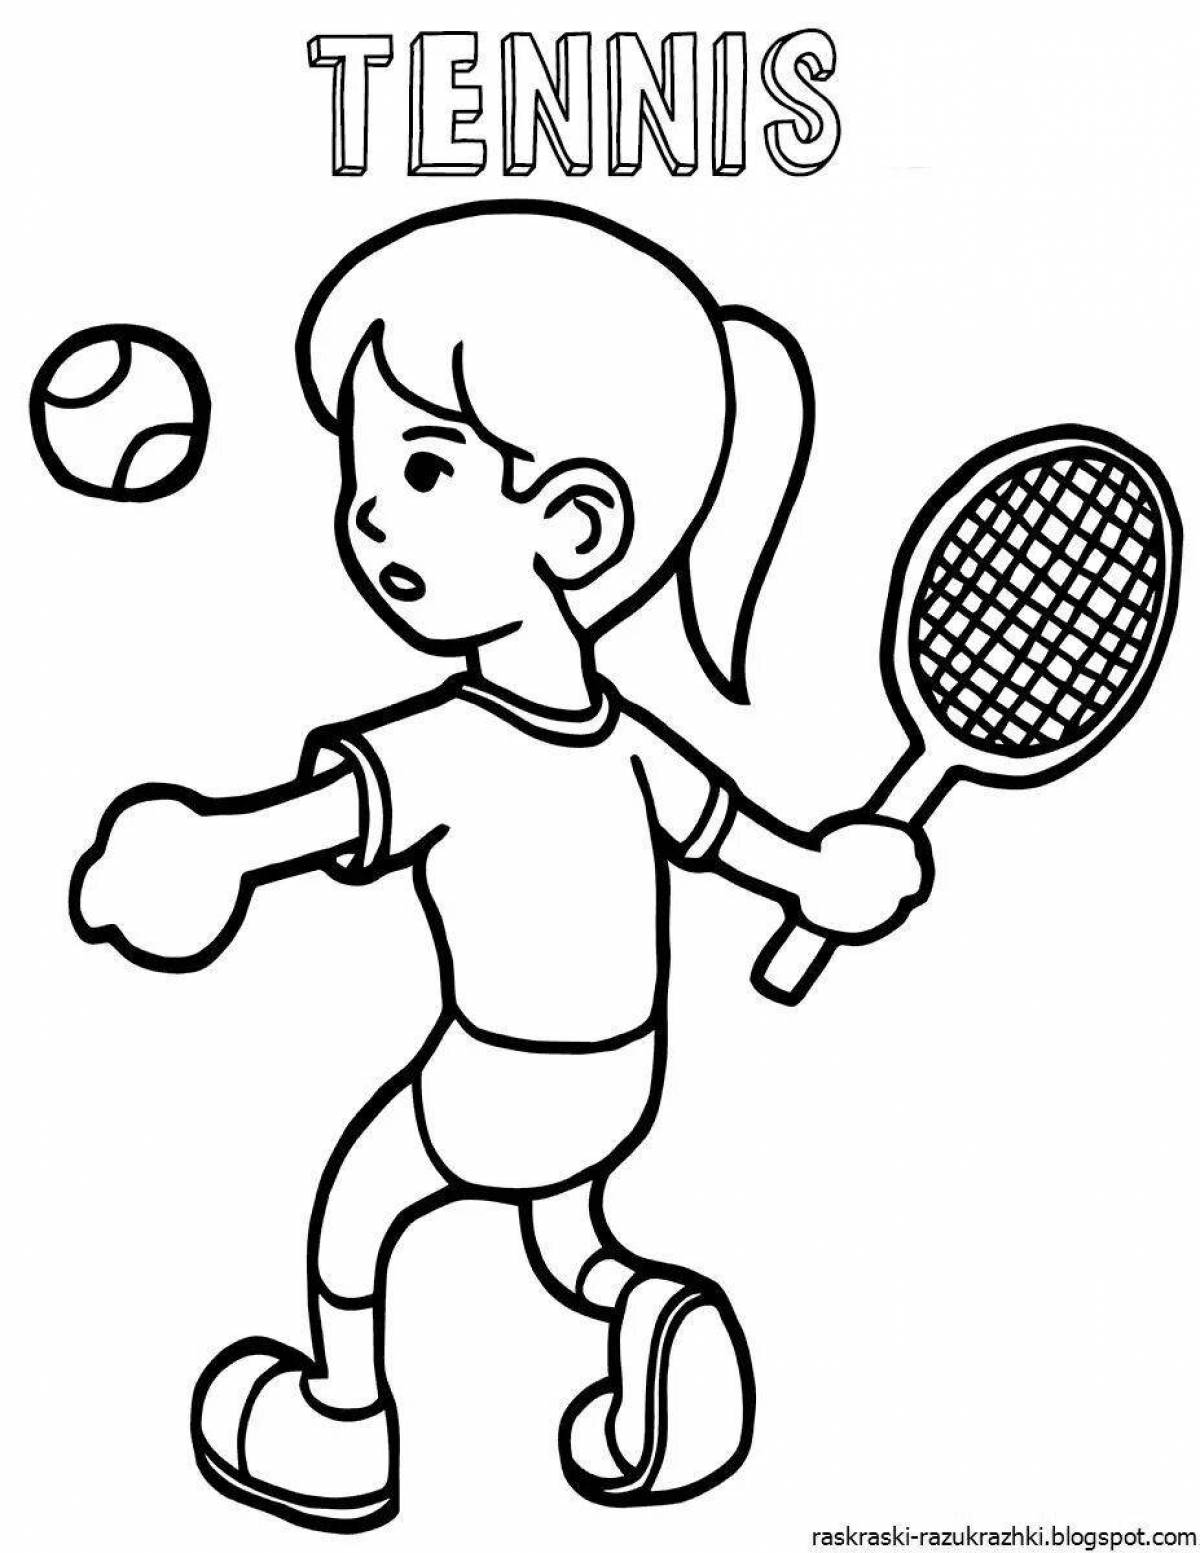 О спорте и здоровом образе жизни для детей #5